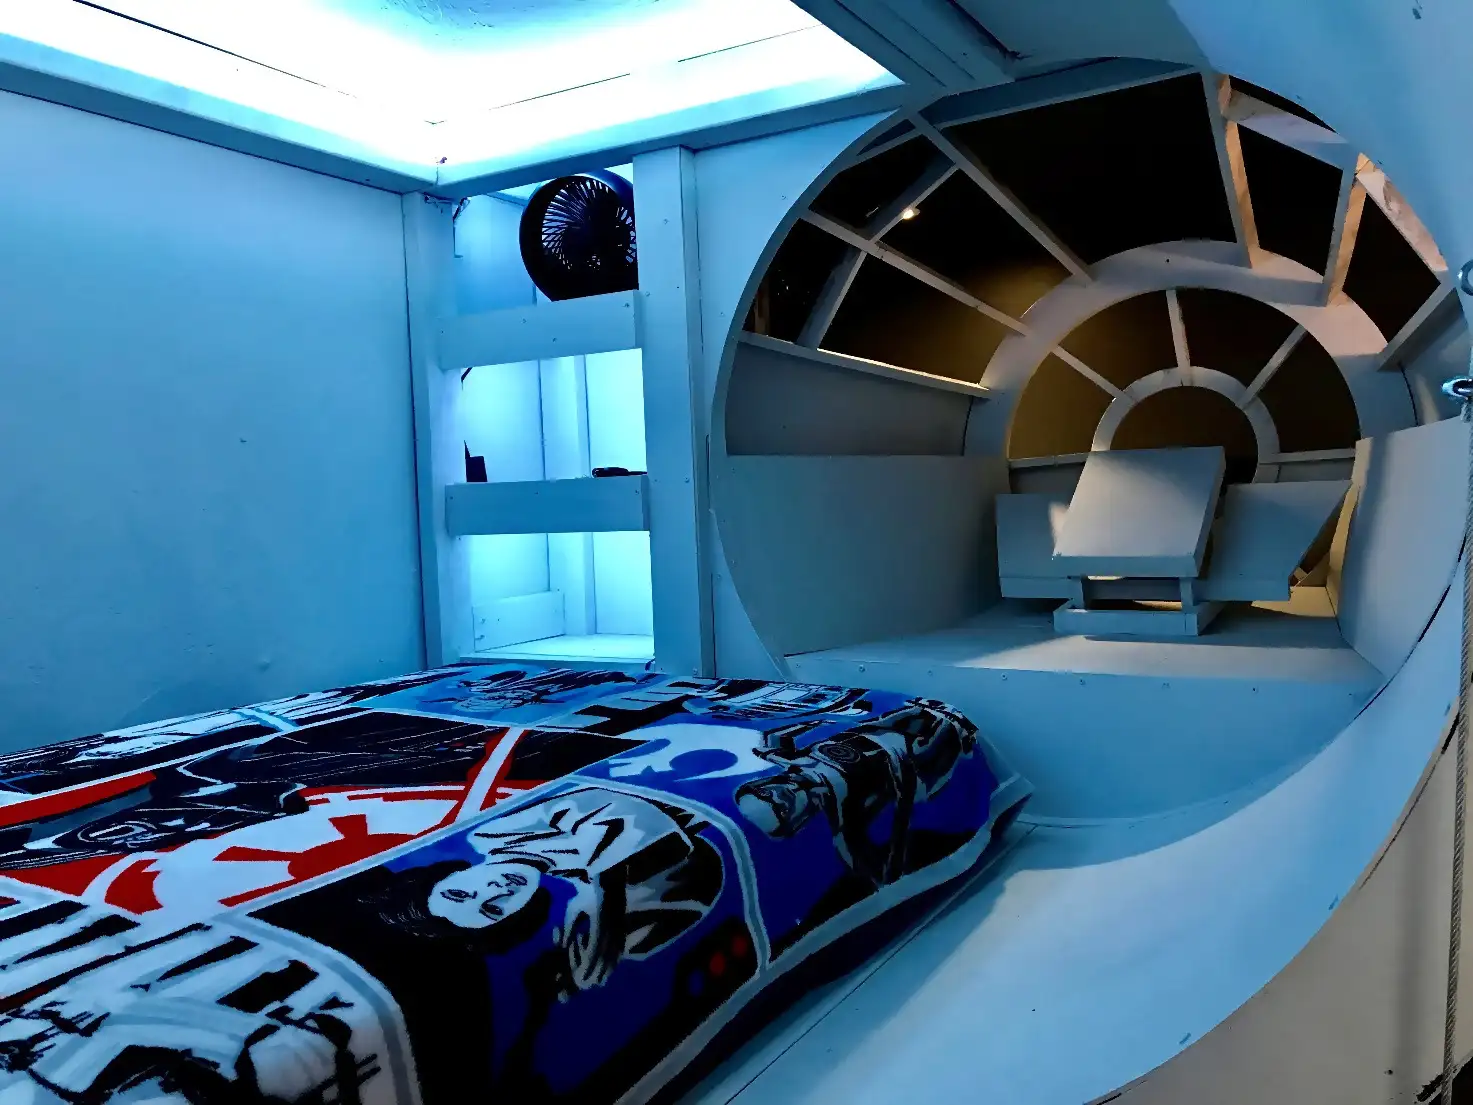 Light Up Star Wars-Inspired Bedroom